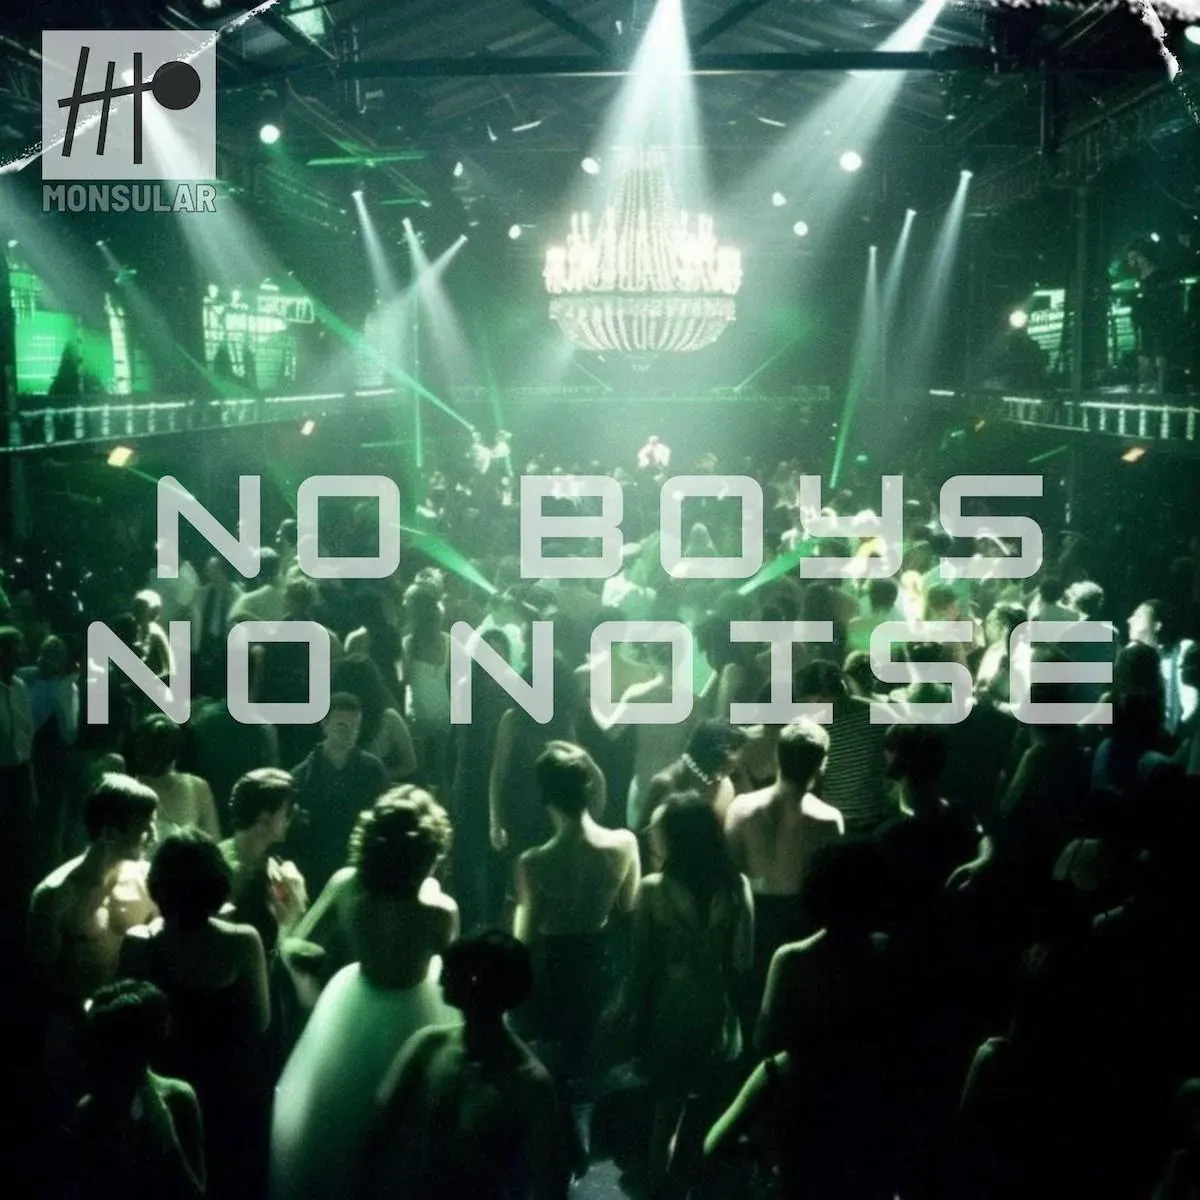 Monsular – No Boys, No Noise